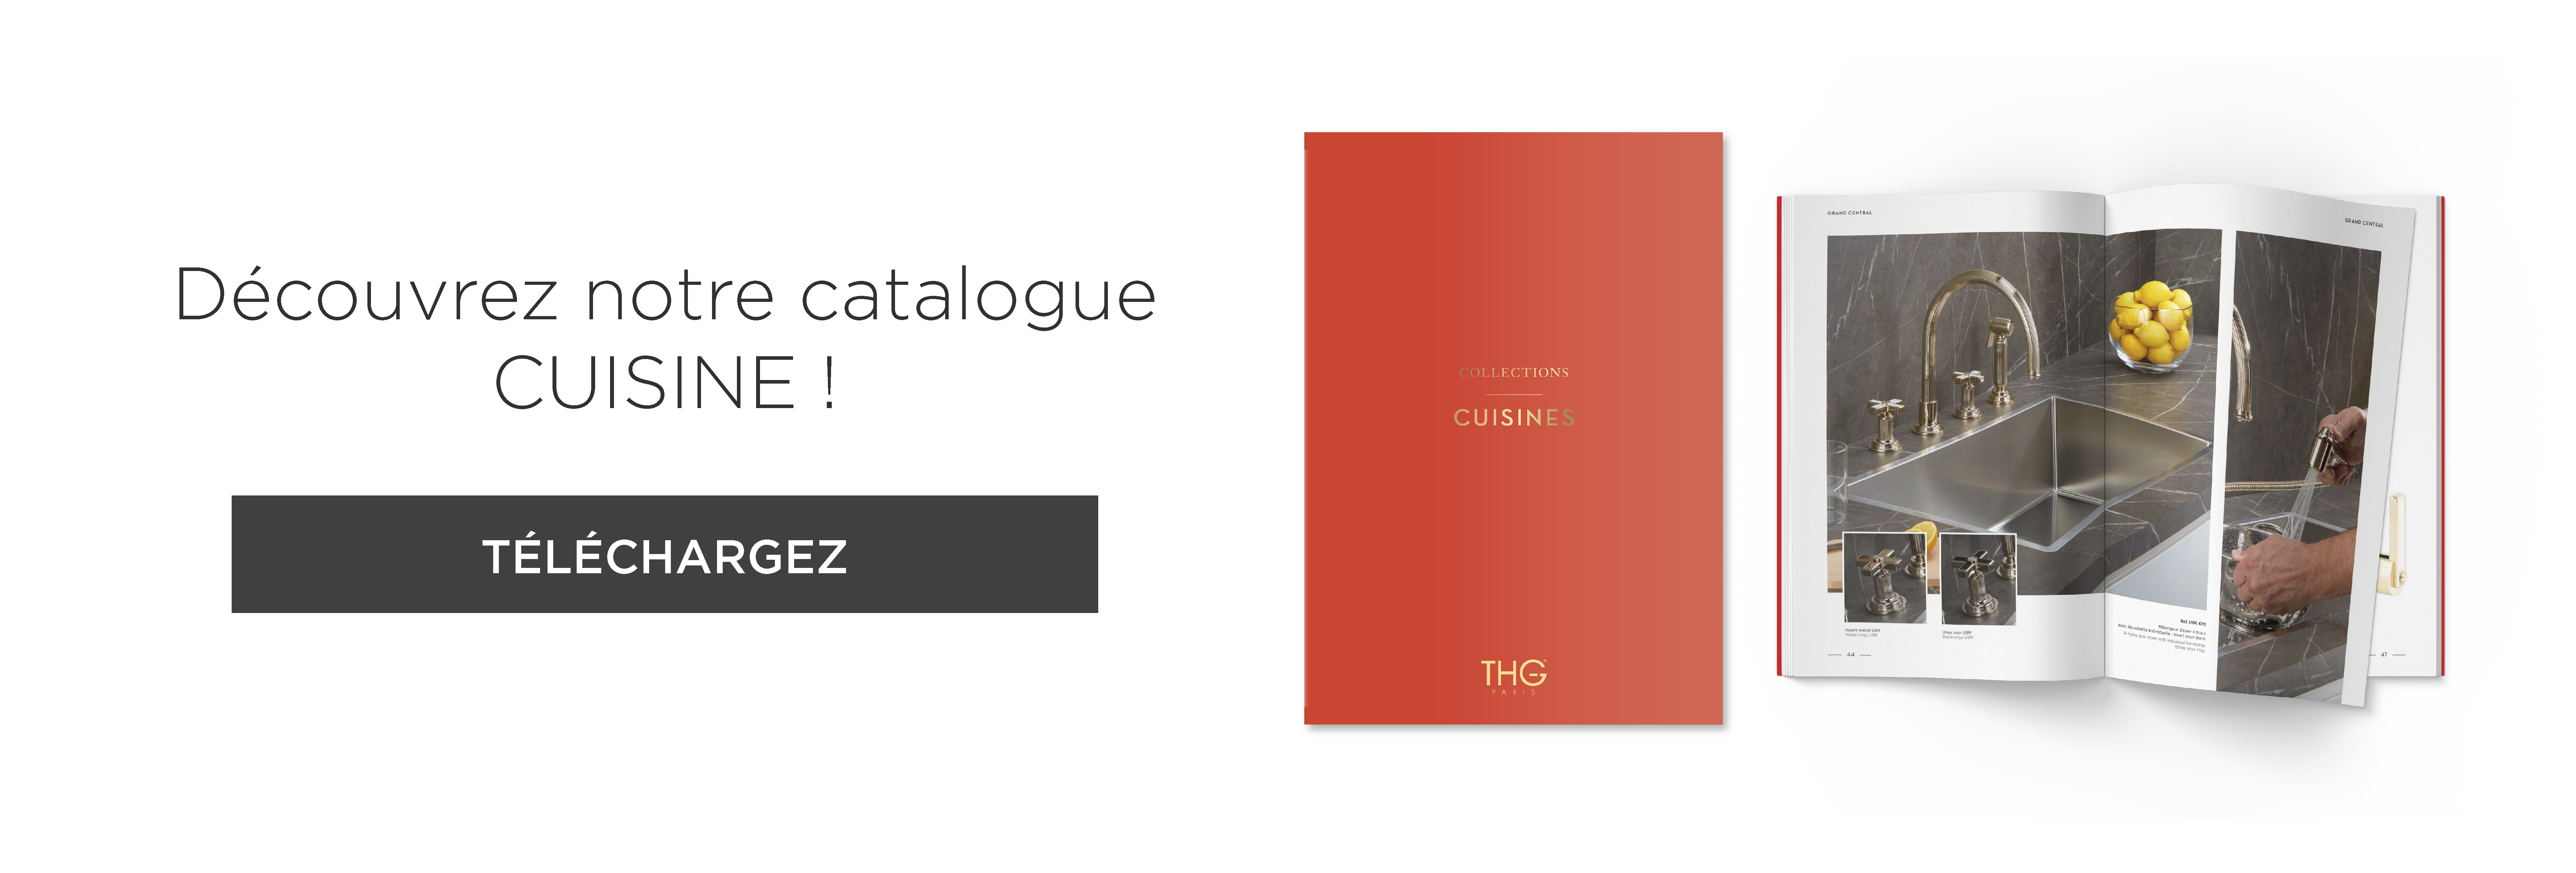 Nouvelles collections exclusives de CUISINE